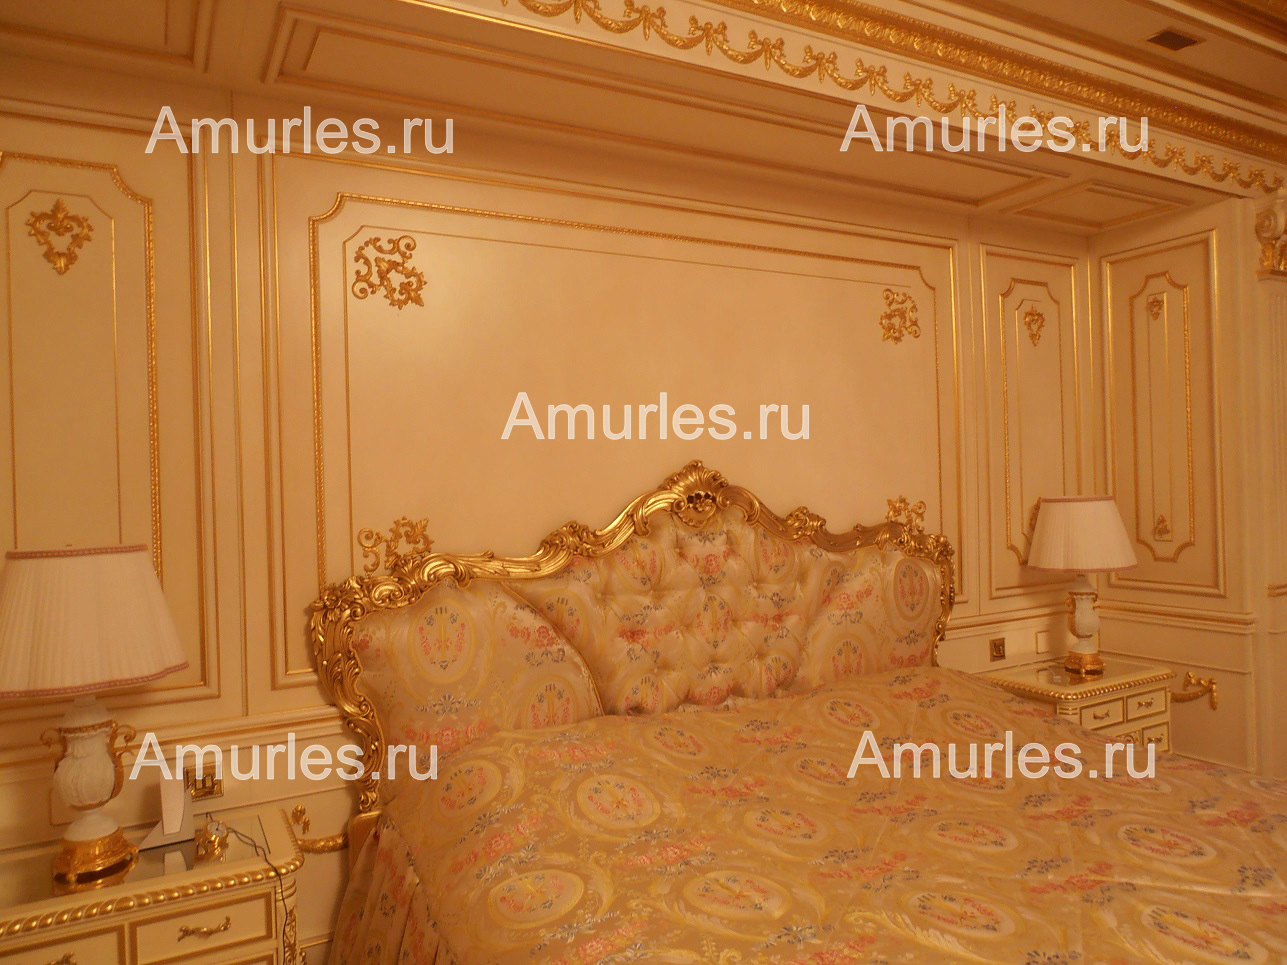 Панели стеновые для кровати в интерьере спальни из массива и шпона ореха, отделка эмалью